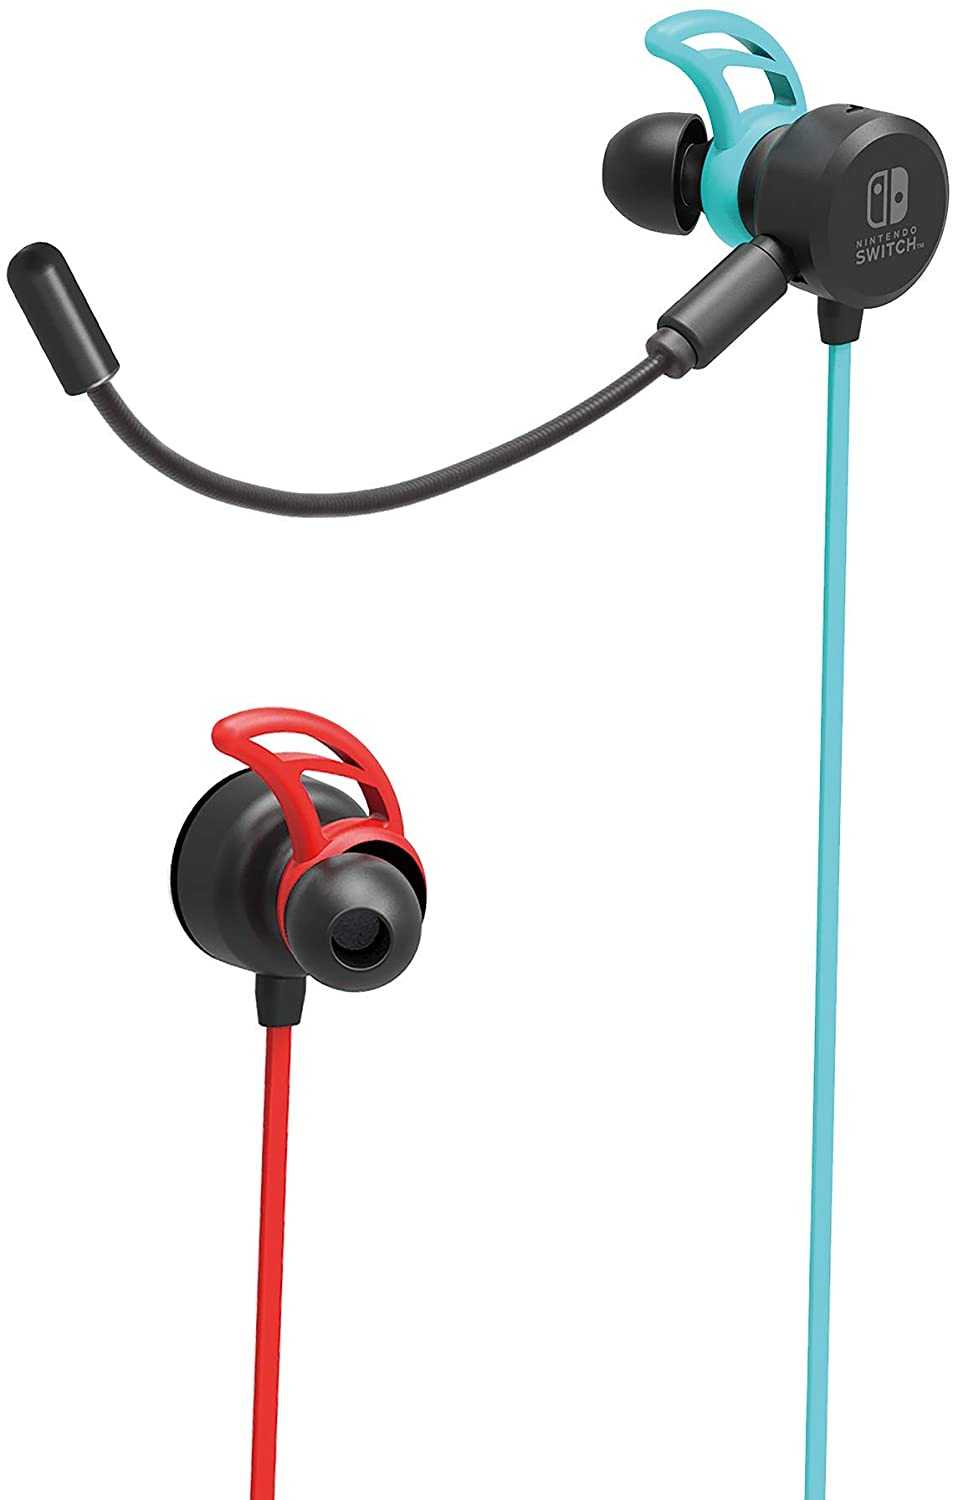 現貨中Switch周邊HORI 入耳式有線耳機麥克風NSW-159 紅藍款【板橋魔力